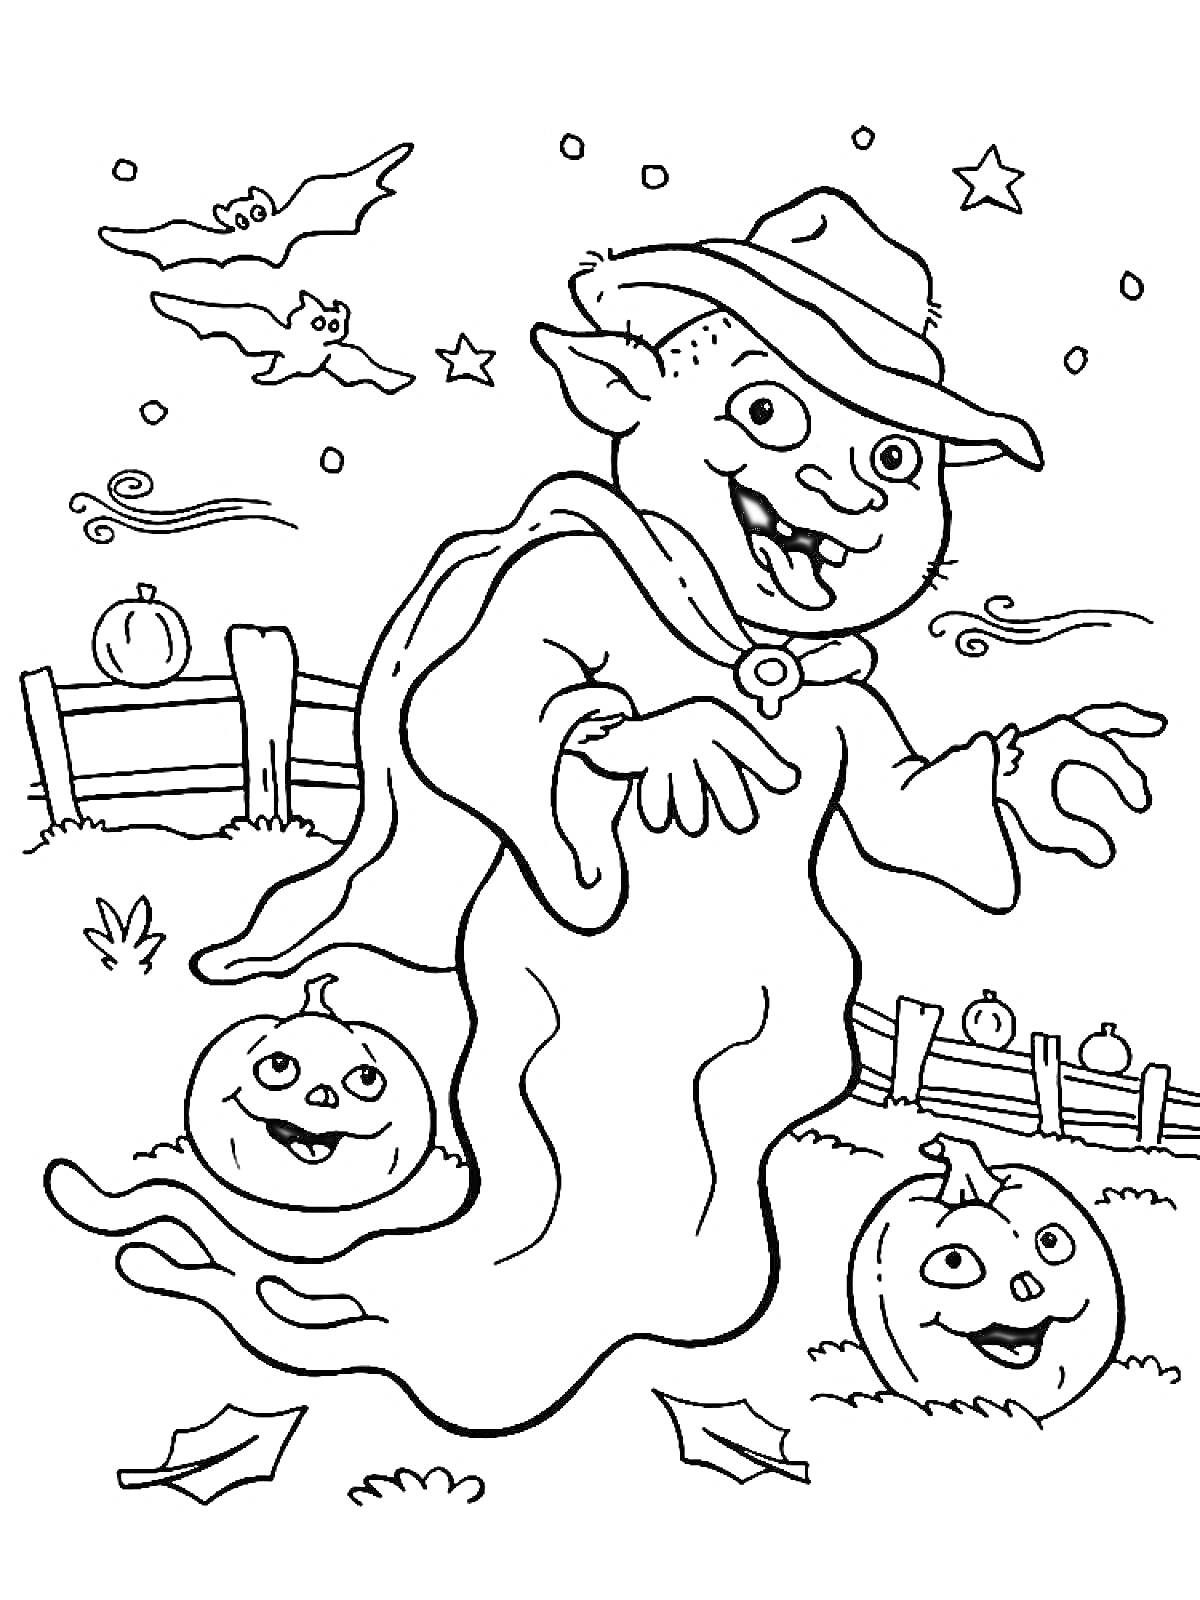 Фигура призрака с шляпой, две тыквы с лицами, два летучих мыша, забор, фон с маленькими звёздами и осенними листьями